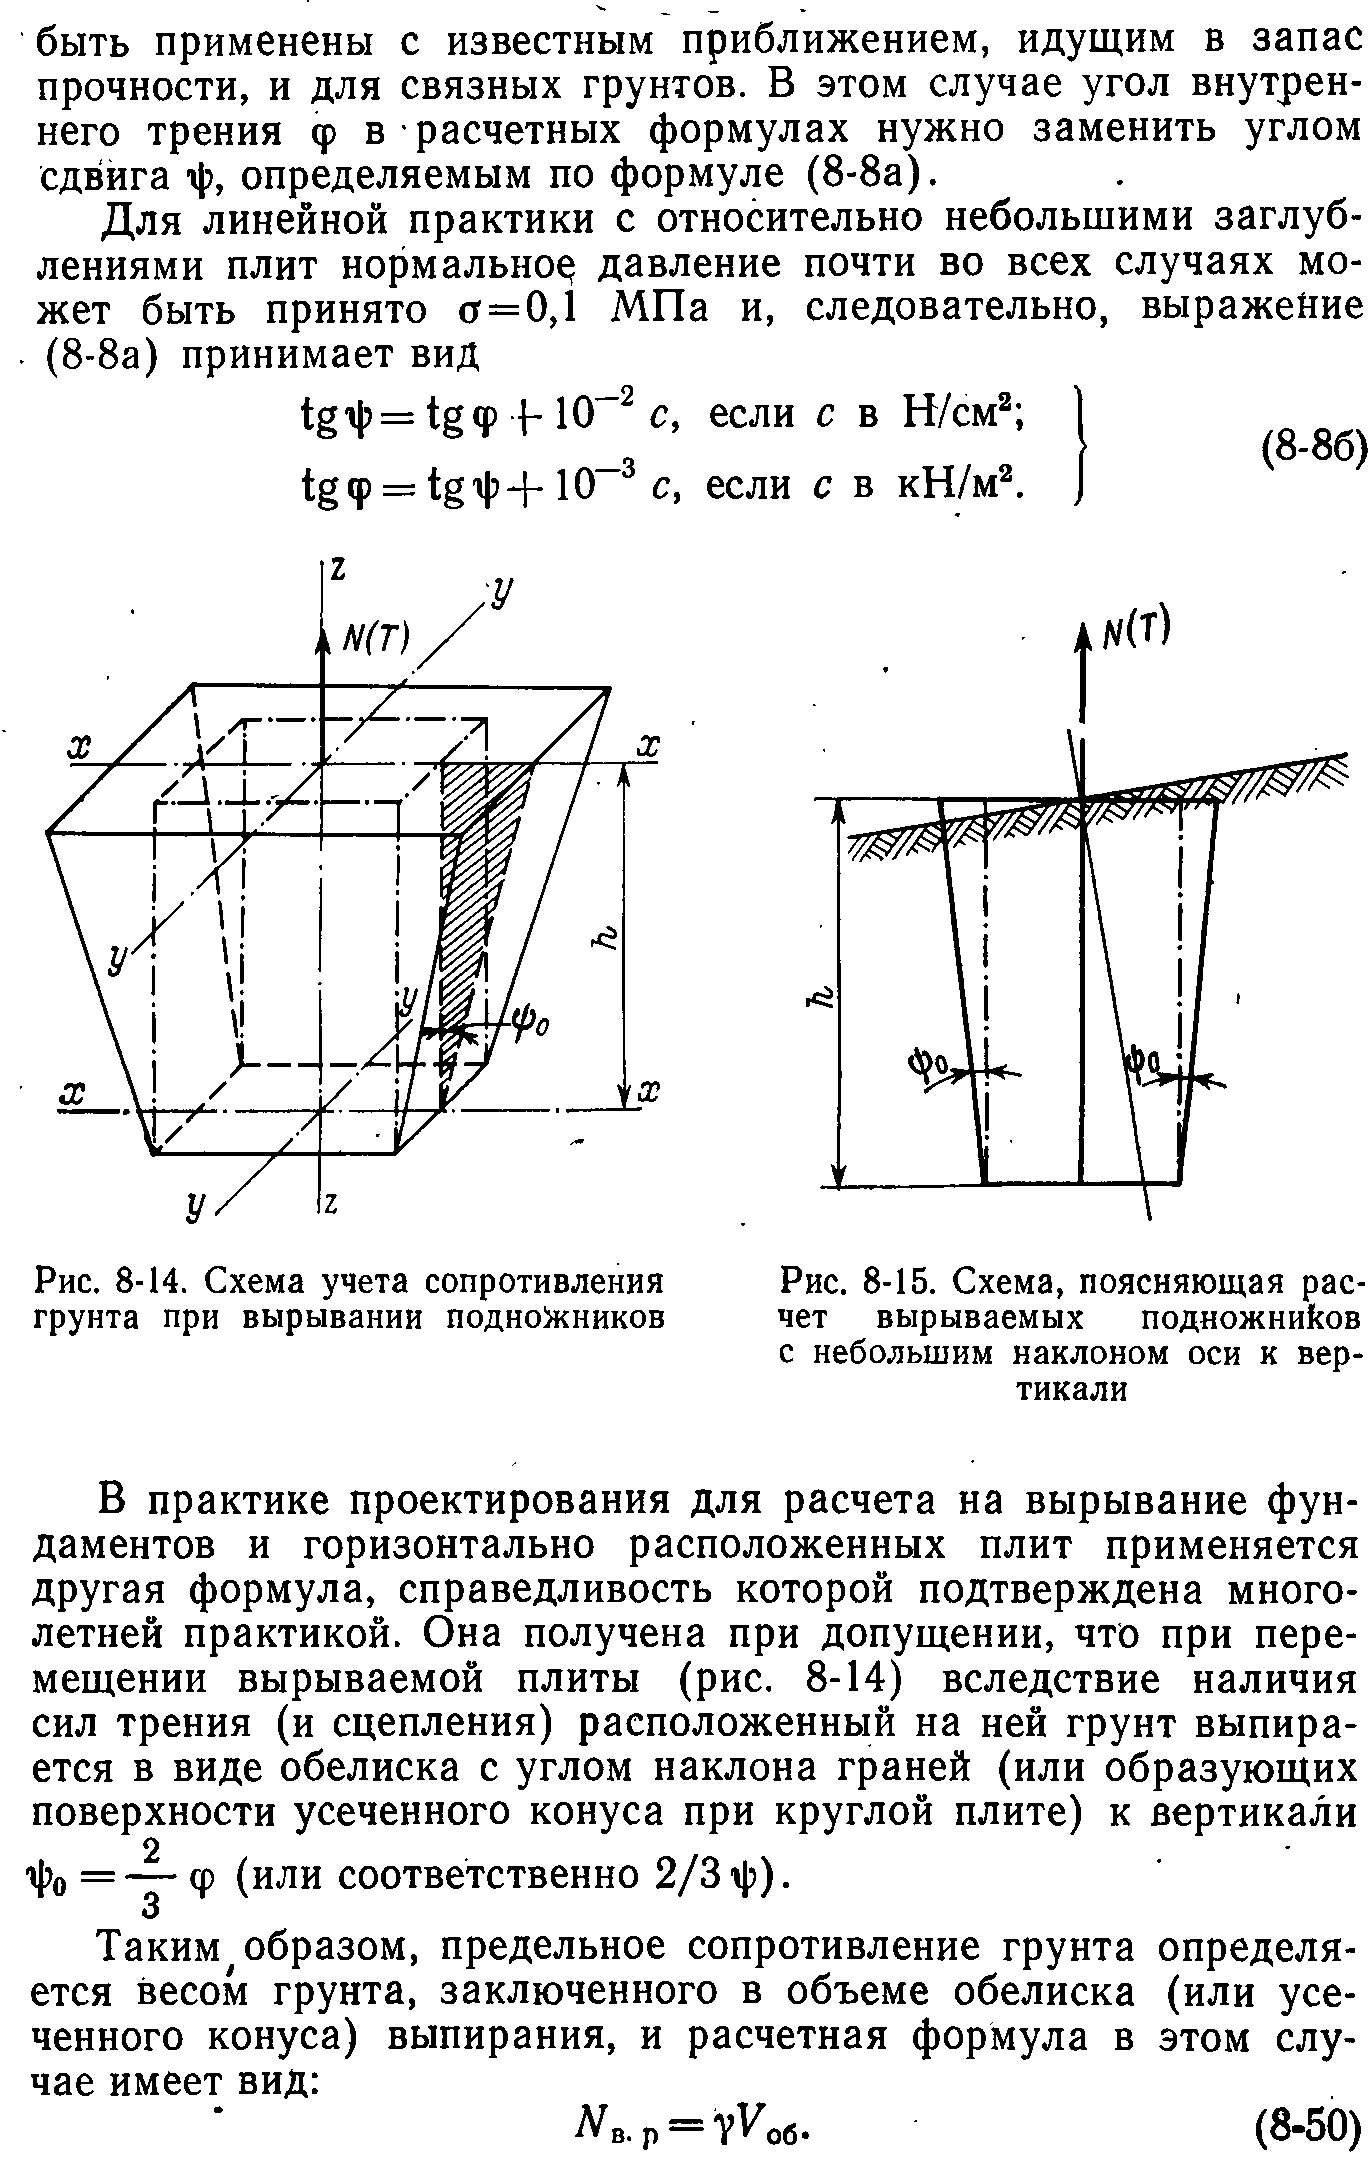 Короб металлический подвешиваемый к конструкциям на оттяжках или подвесах длина 2 м